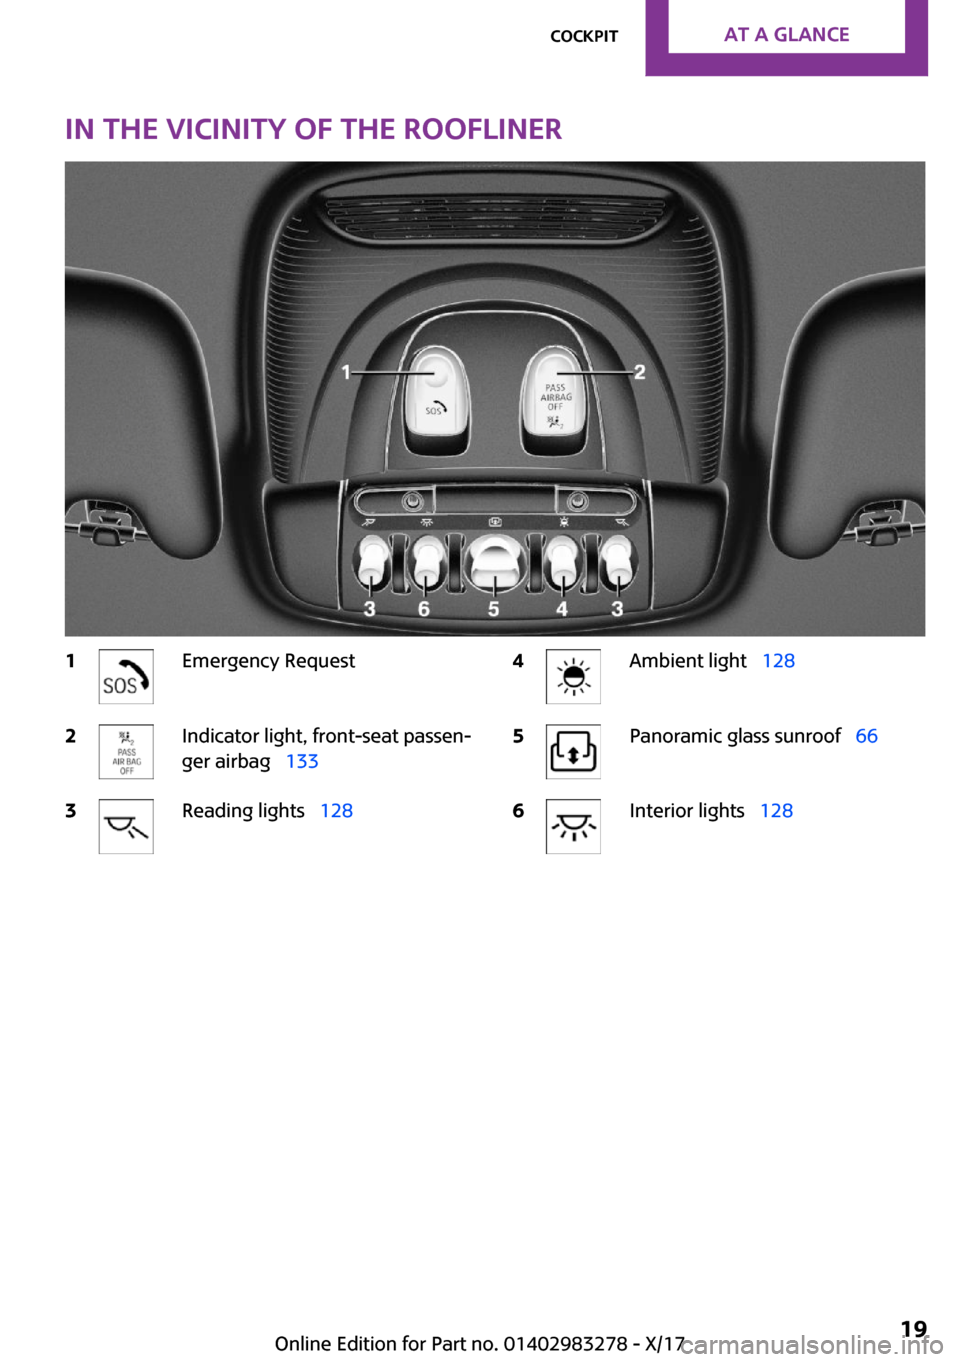 MINI Clubman 2018 User Guide �I�n��t�h�e��v�i�c�i�n�i�t�y��o�f��t�h�e��r�o�o�f�l�i�n�e�r�1�E�m�e�r�g�e�n�c�y� �R�e�q�u�e�s�t�2�I�n�d�i�c�a�t�o�r� �l�i�g�h�t�,� �f�r�o�n�t�-�s�e�a�t� �p�a�s�s�e�n~
�g�e�r� �a�i�r�b�a�gps �1